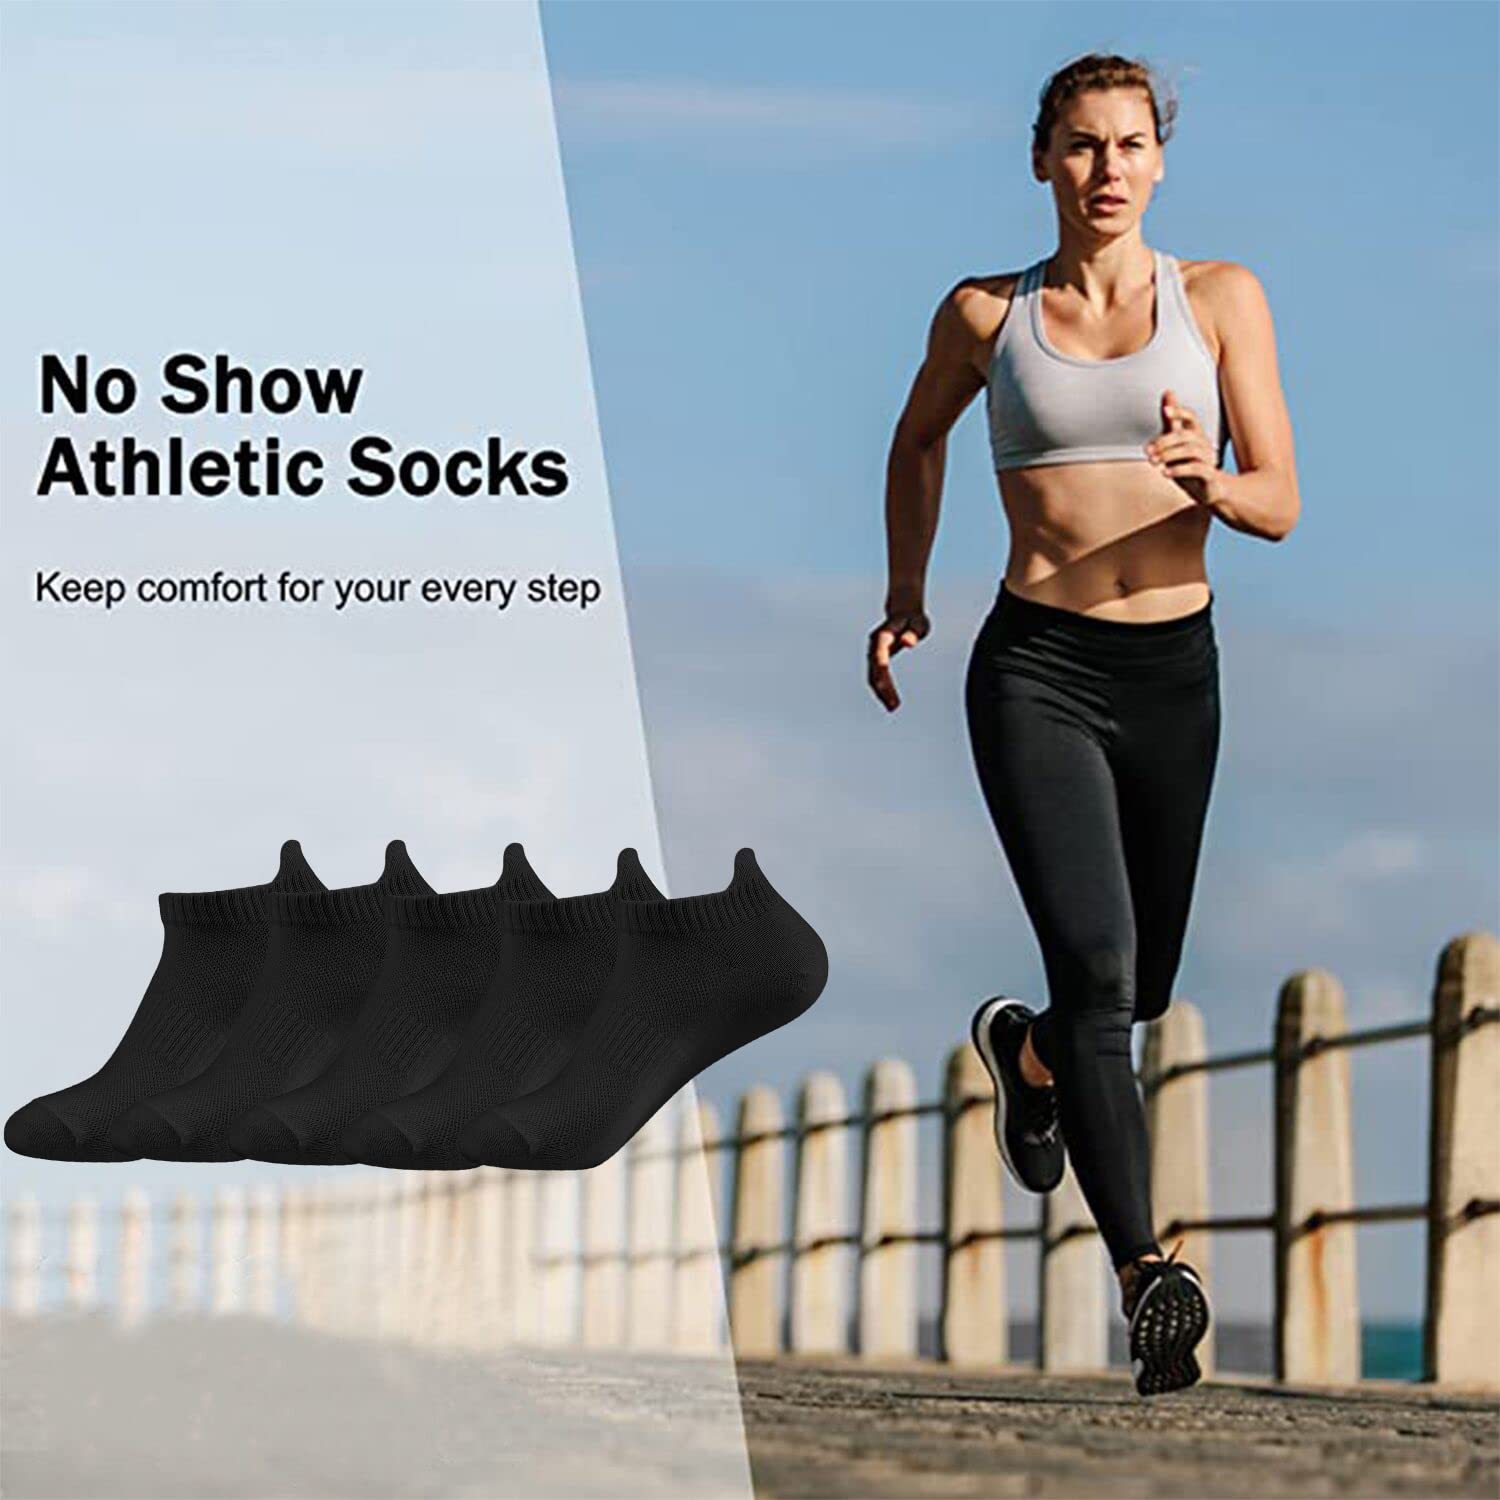 Calcetines tobilleros para correr para mujer, de algodón, acolchados, de 5  a 6 pares, para entrenamiento, no visibles, para mujer